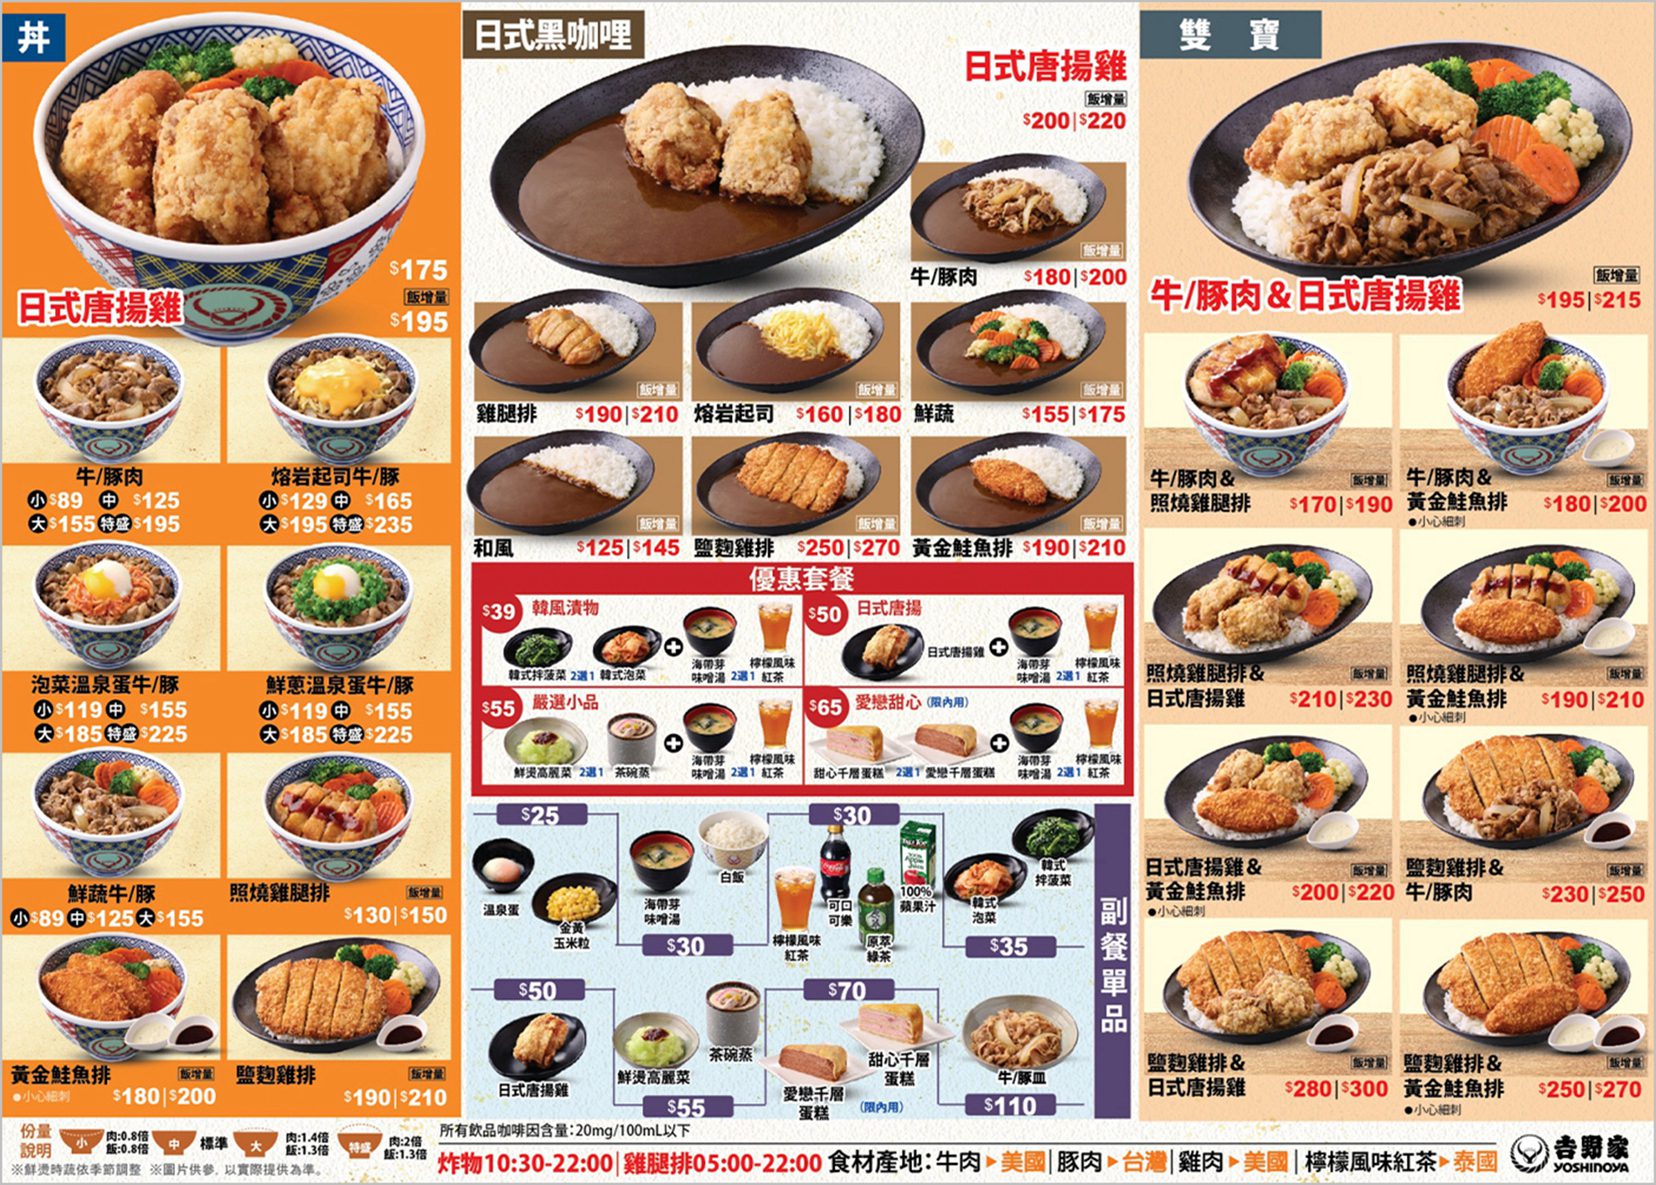 登錄發票抽東京雙人來回機票！ 「吉野家」新菜單推日式黑咖哩和日式唐揚雞系列